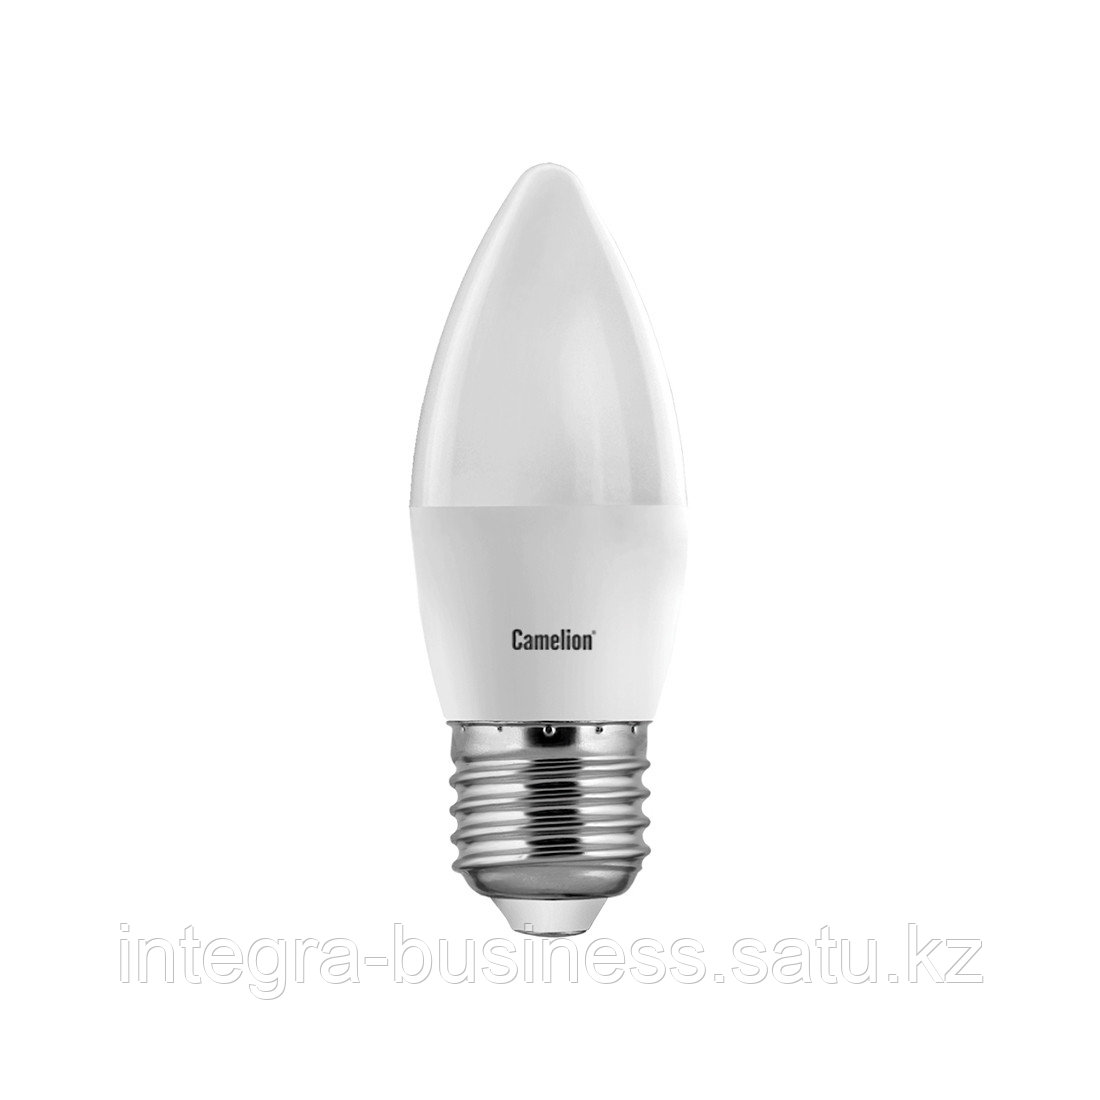 Эл. лампа светодиодная Camelion LED7-C35/845/E27, Холодный